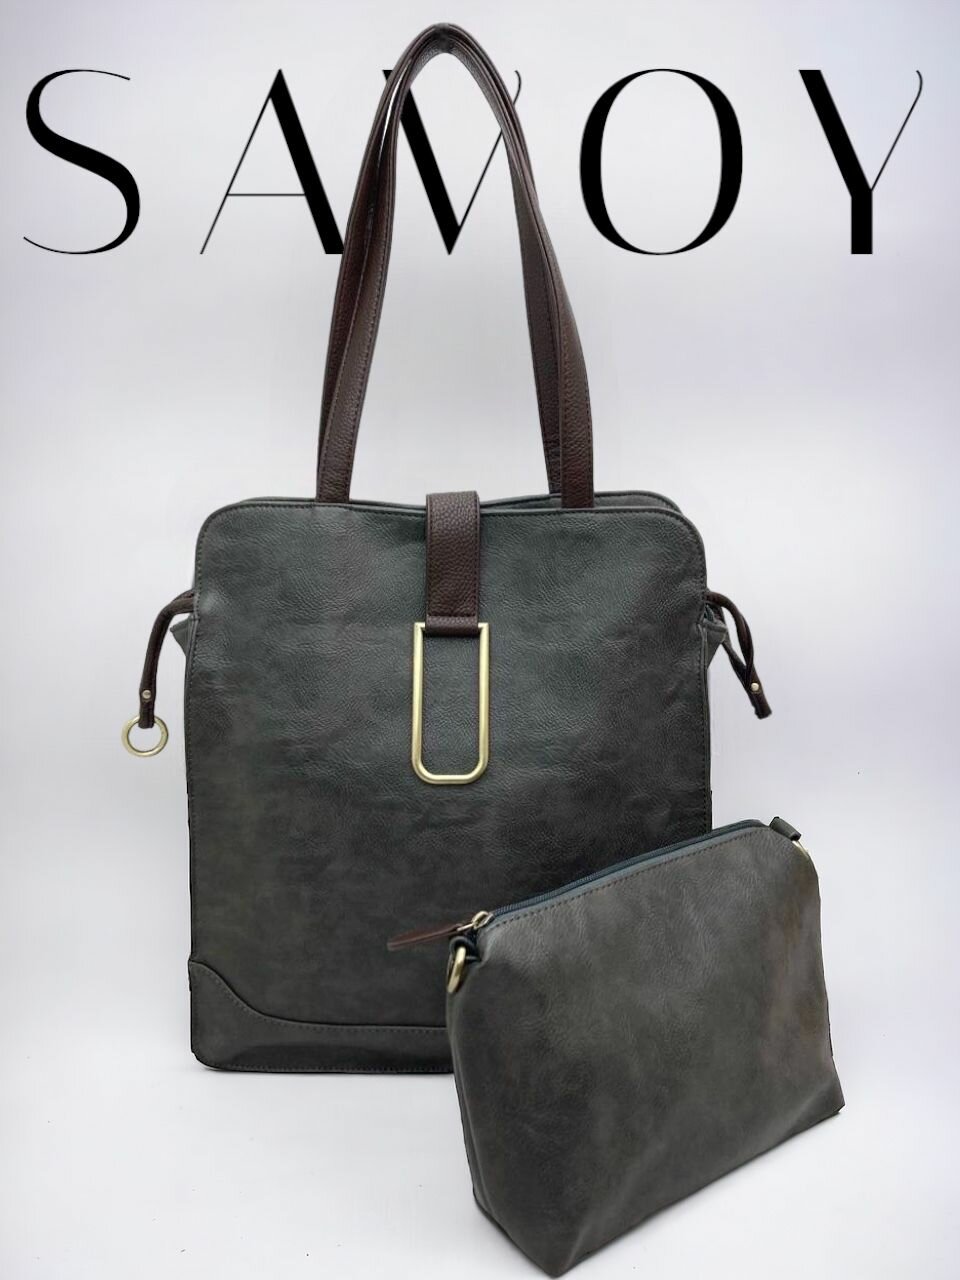 Сумка шоппер Savoy 